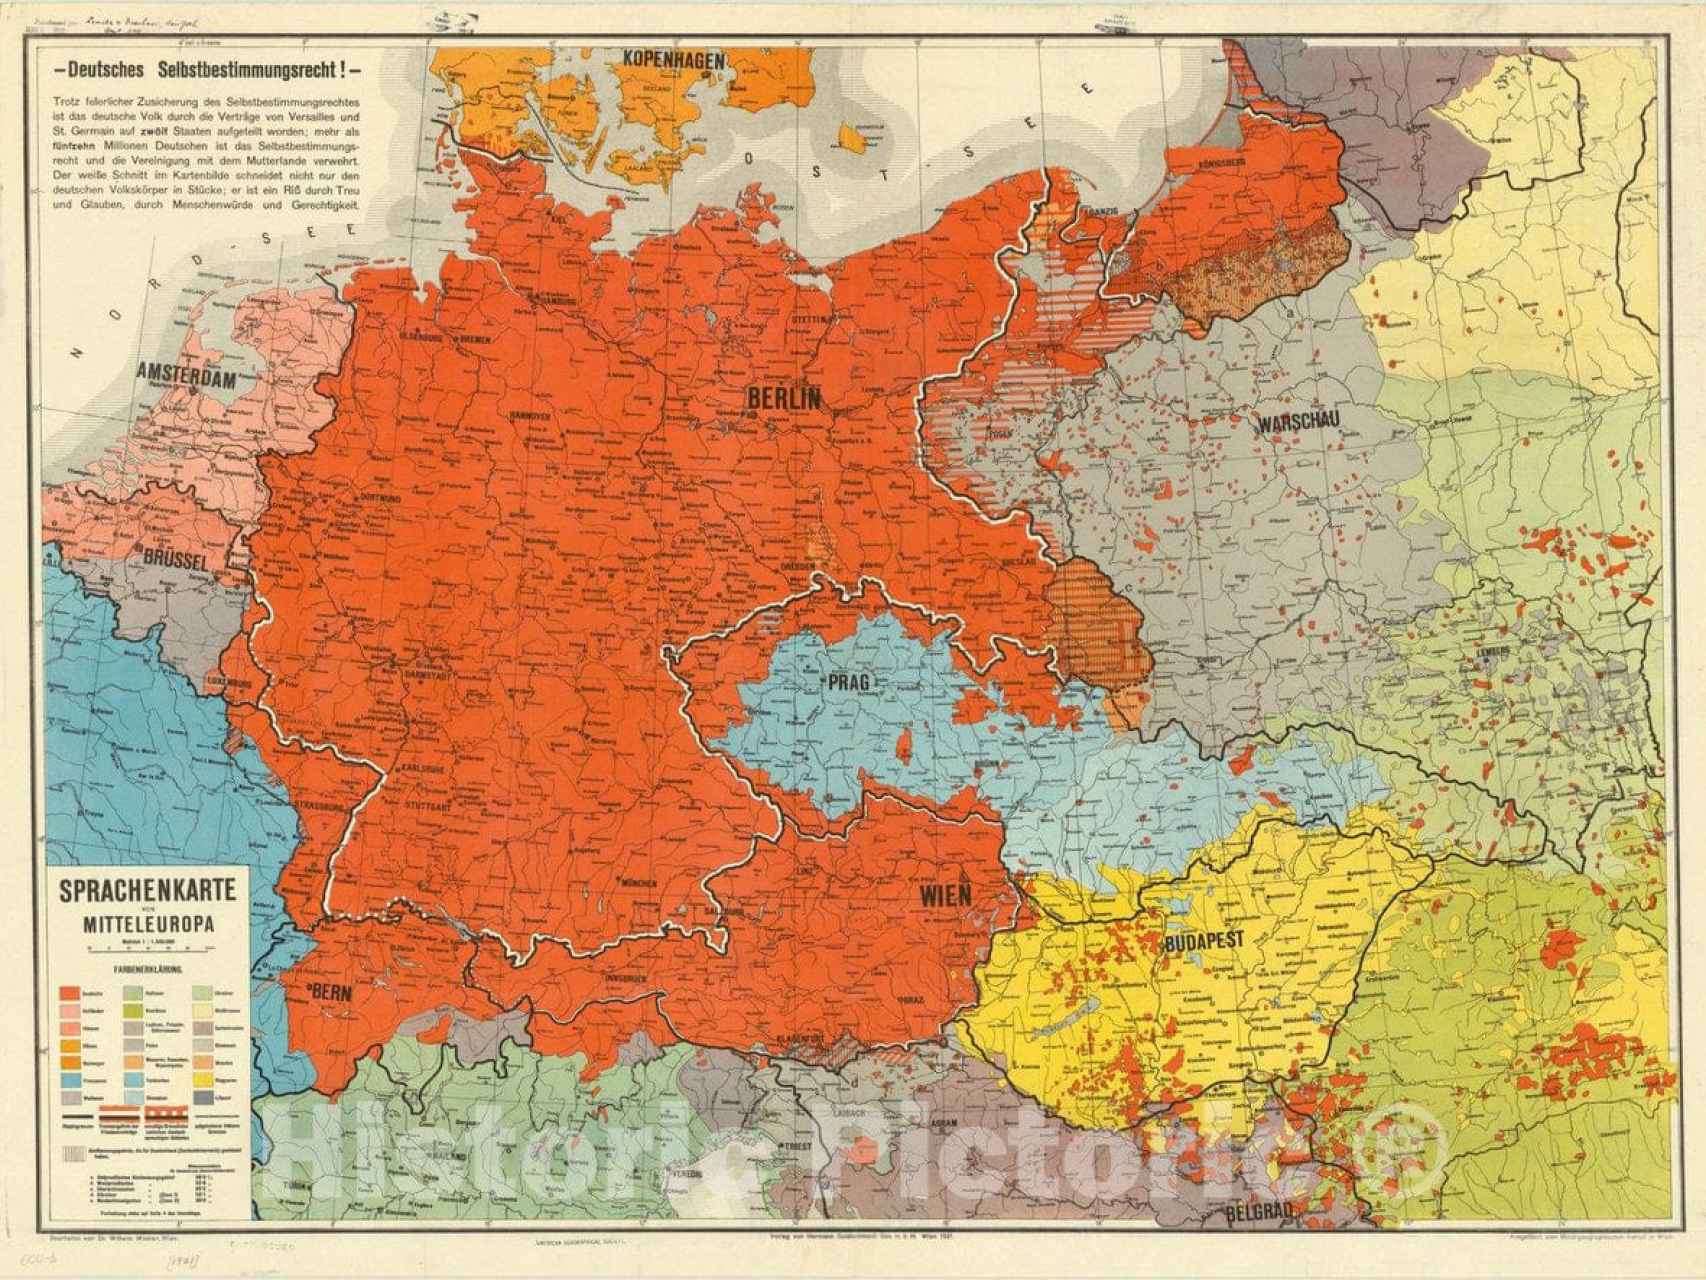 Europa Central en 1921